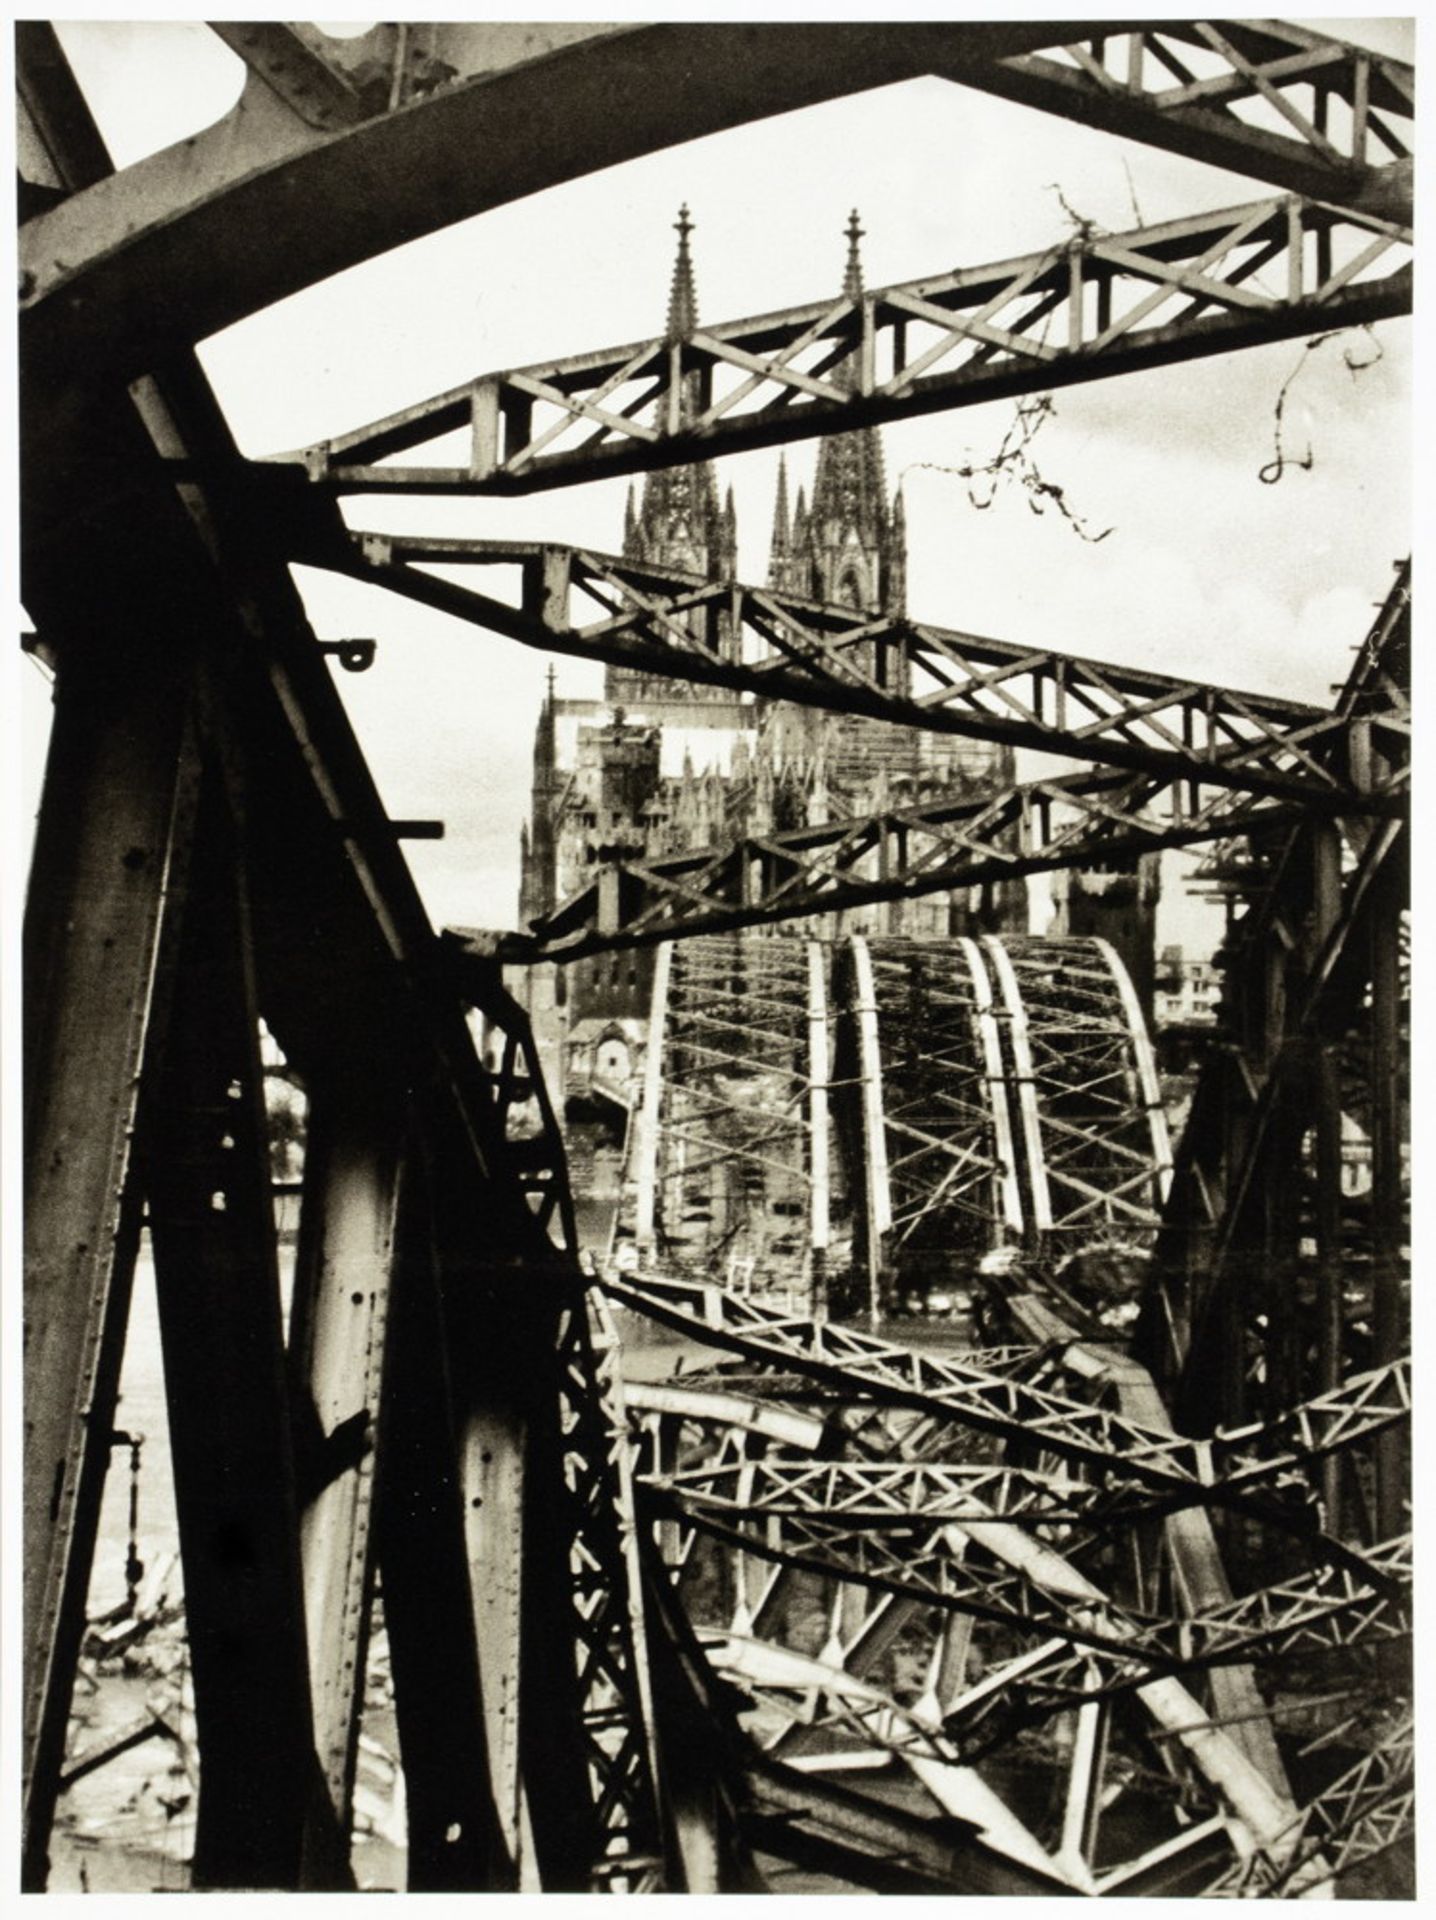 Fotografie - Aus den Archiven I: 1945 - Köln und Dresden. - Image 2 of 7